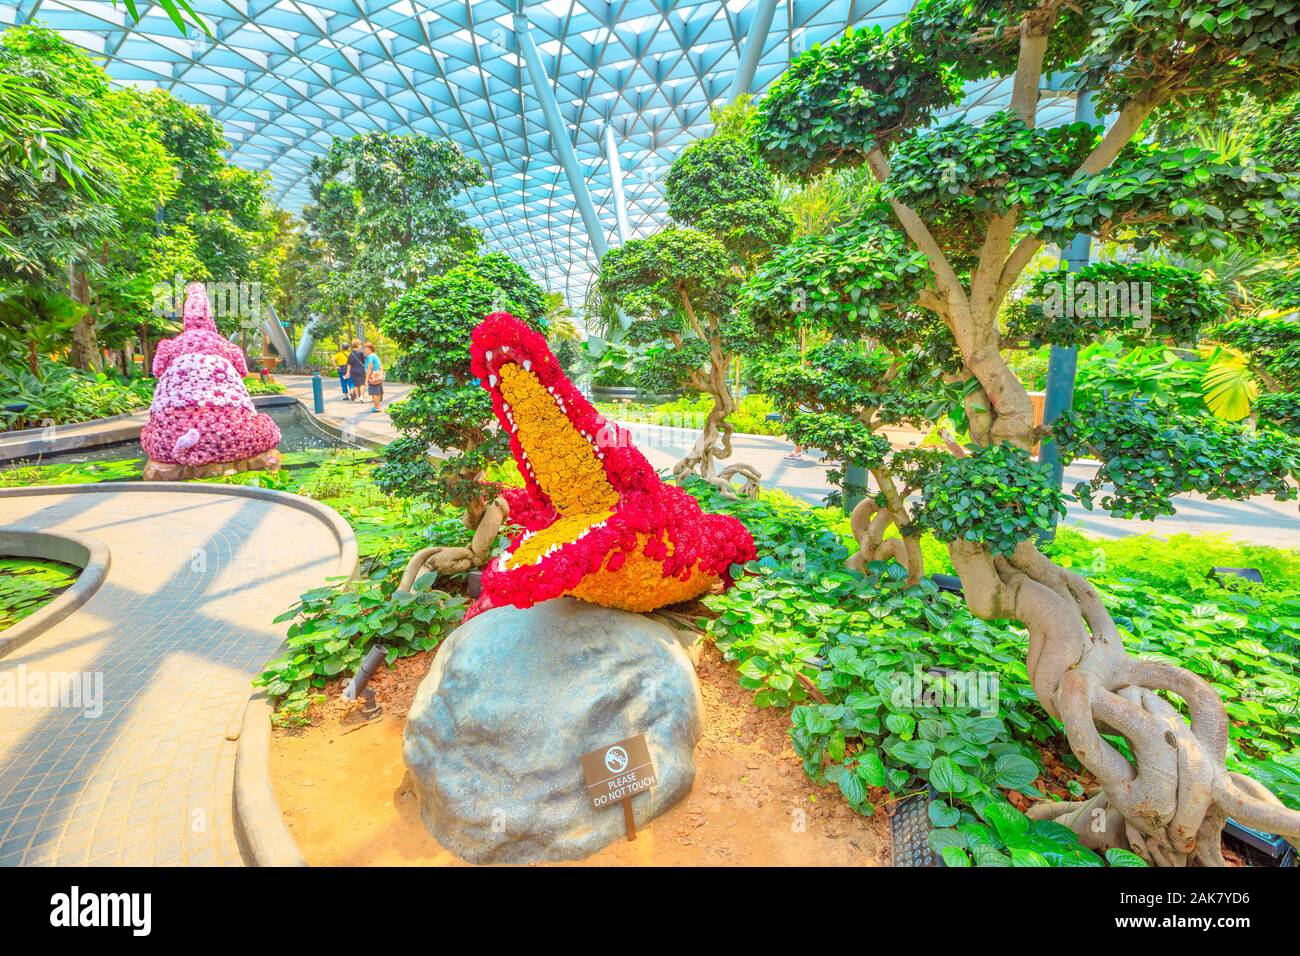 Singapur - Aug 8, 2019: Rote Krokodil Blume Skulptur, Formgehölze Spaziergang am Vordach Park. Jewel Changi Airport ist ein Natur-themed mit Gärten Stockfoto